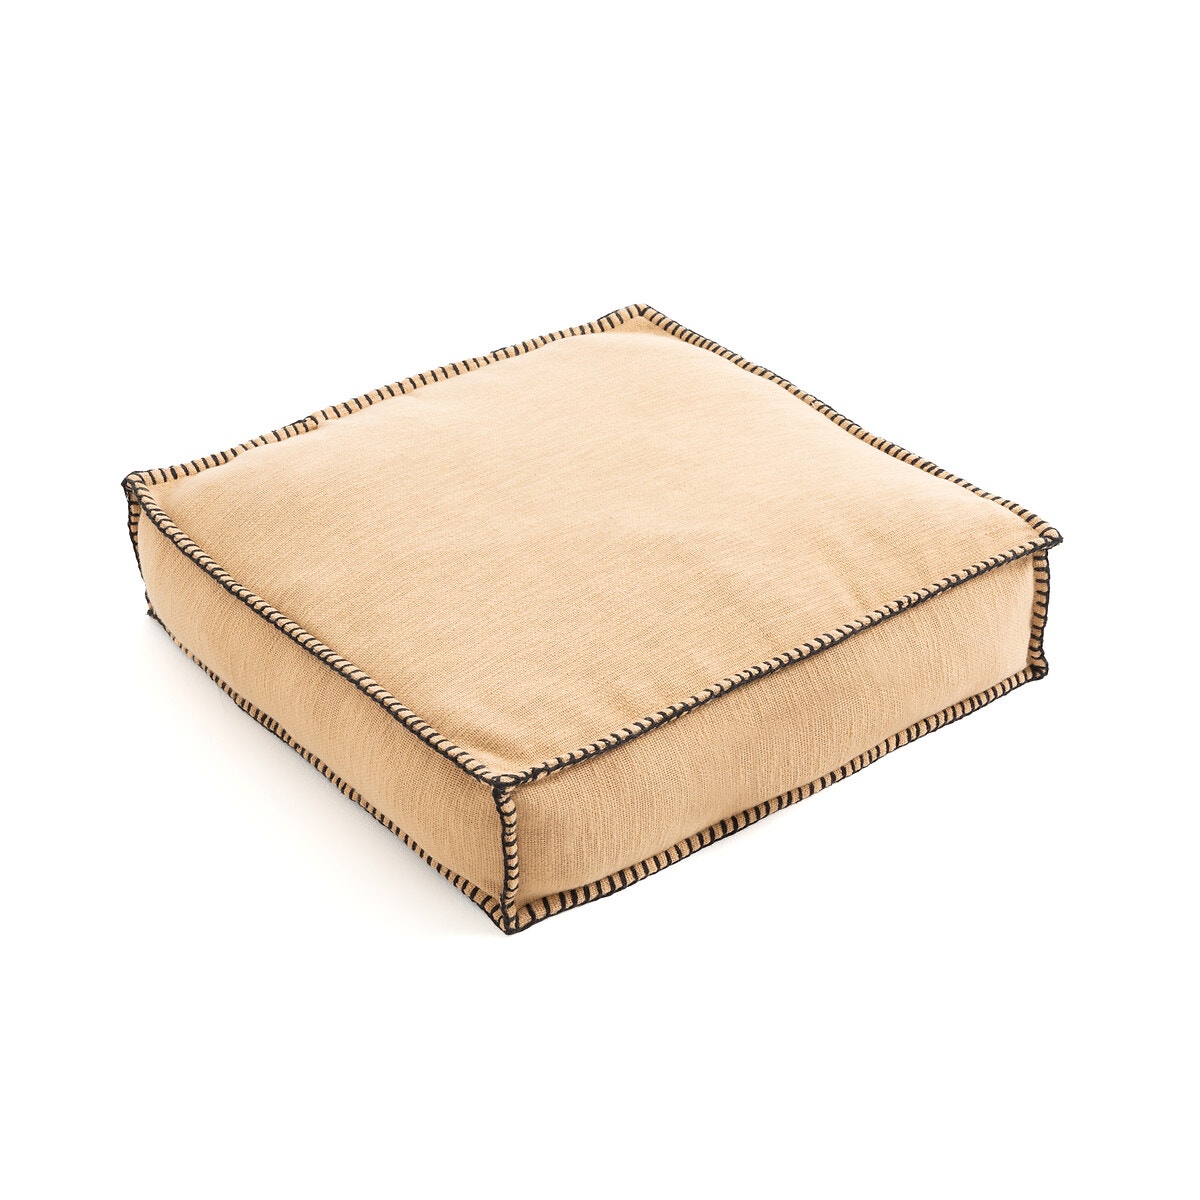 Βαμβακερό μαξιλάρι δαπέδου με ψαθωτή ύφανση, Raoul